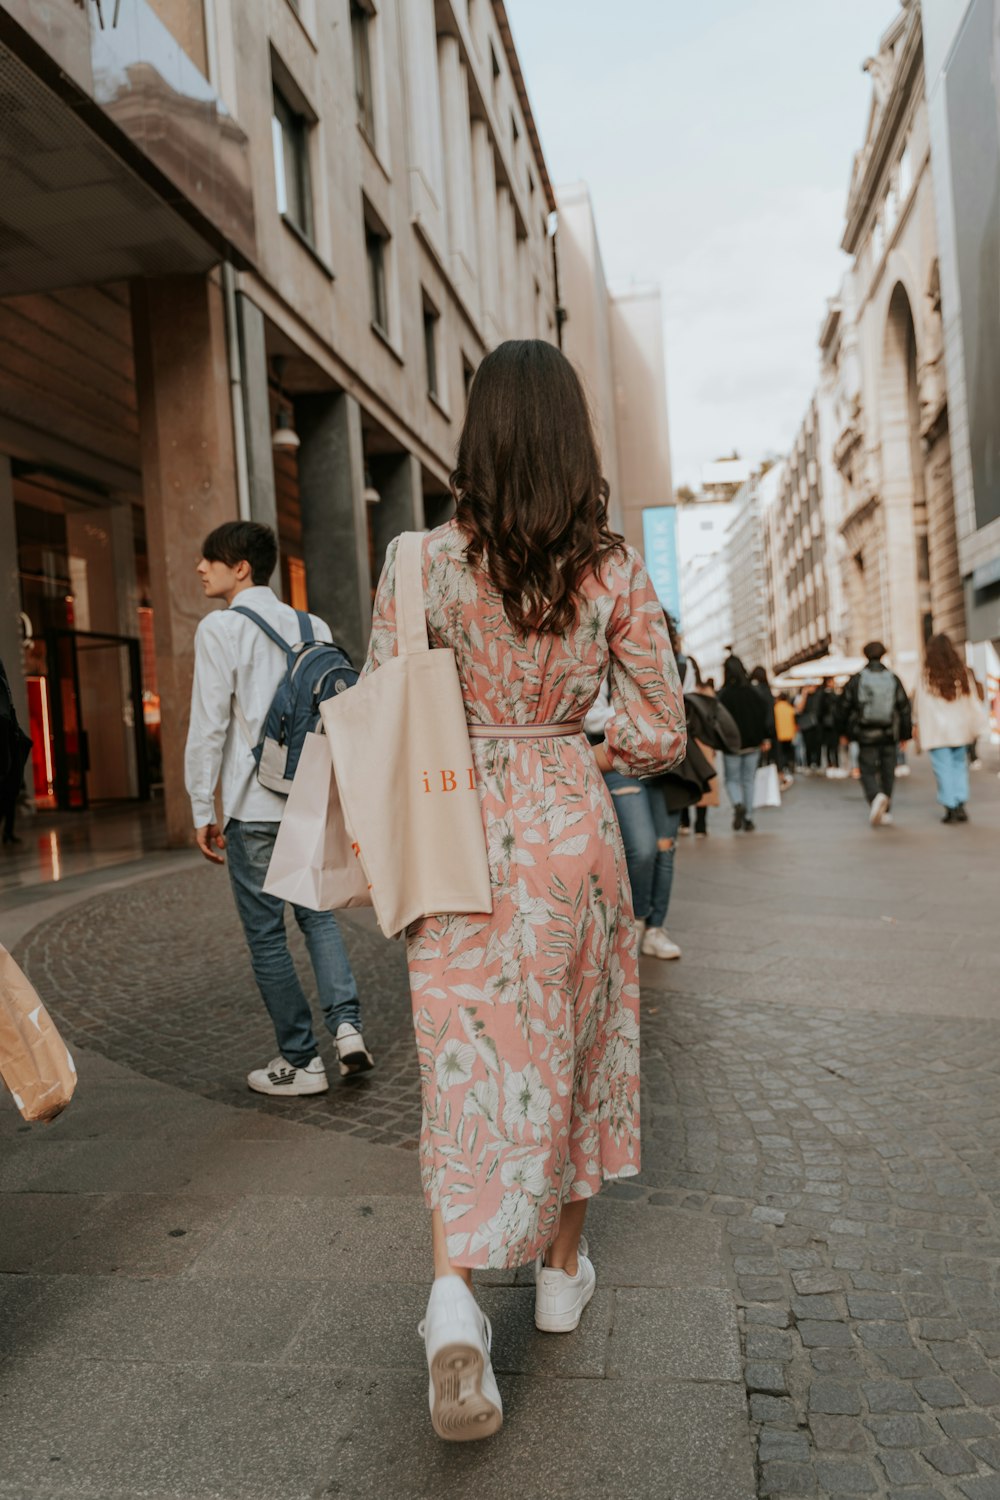 a woman walking down a street carrying shopping bags